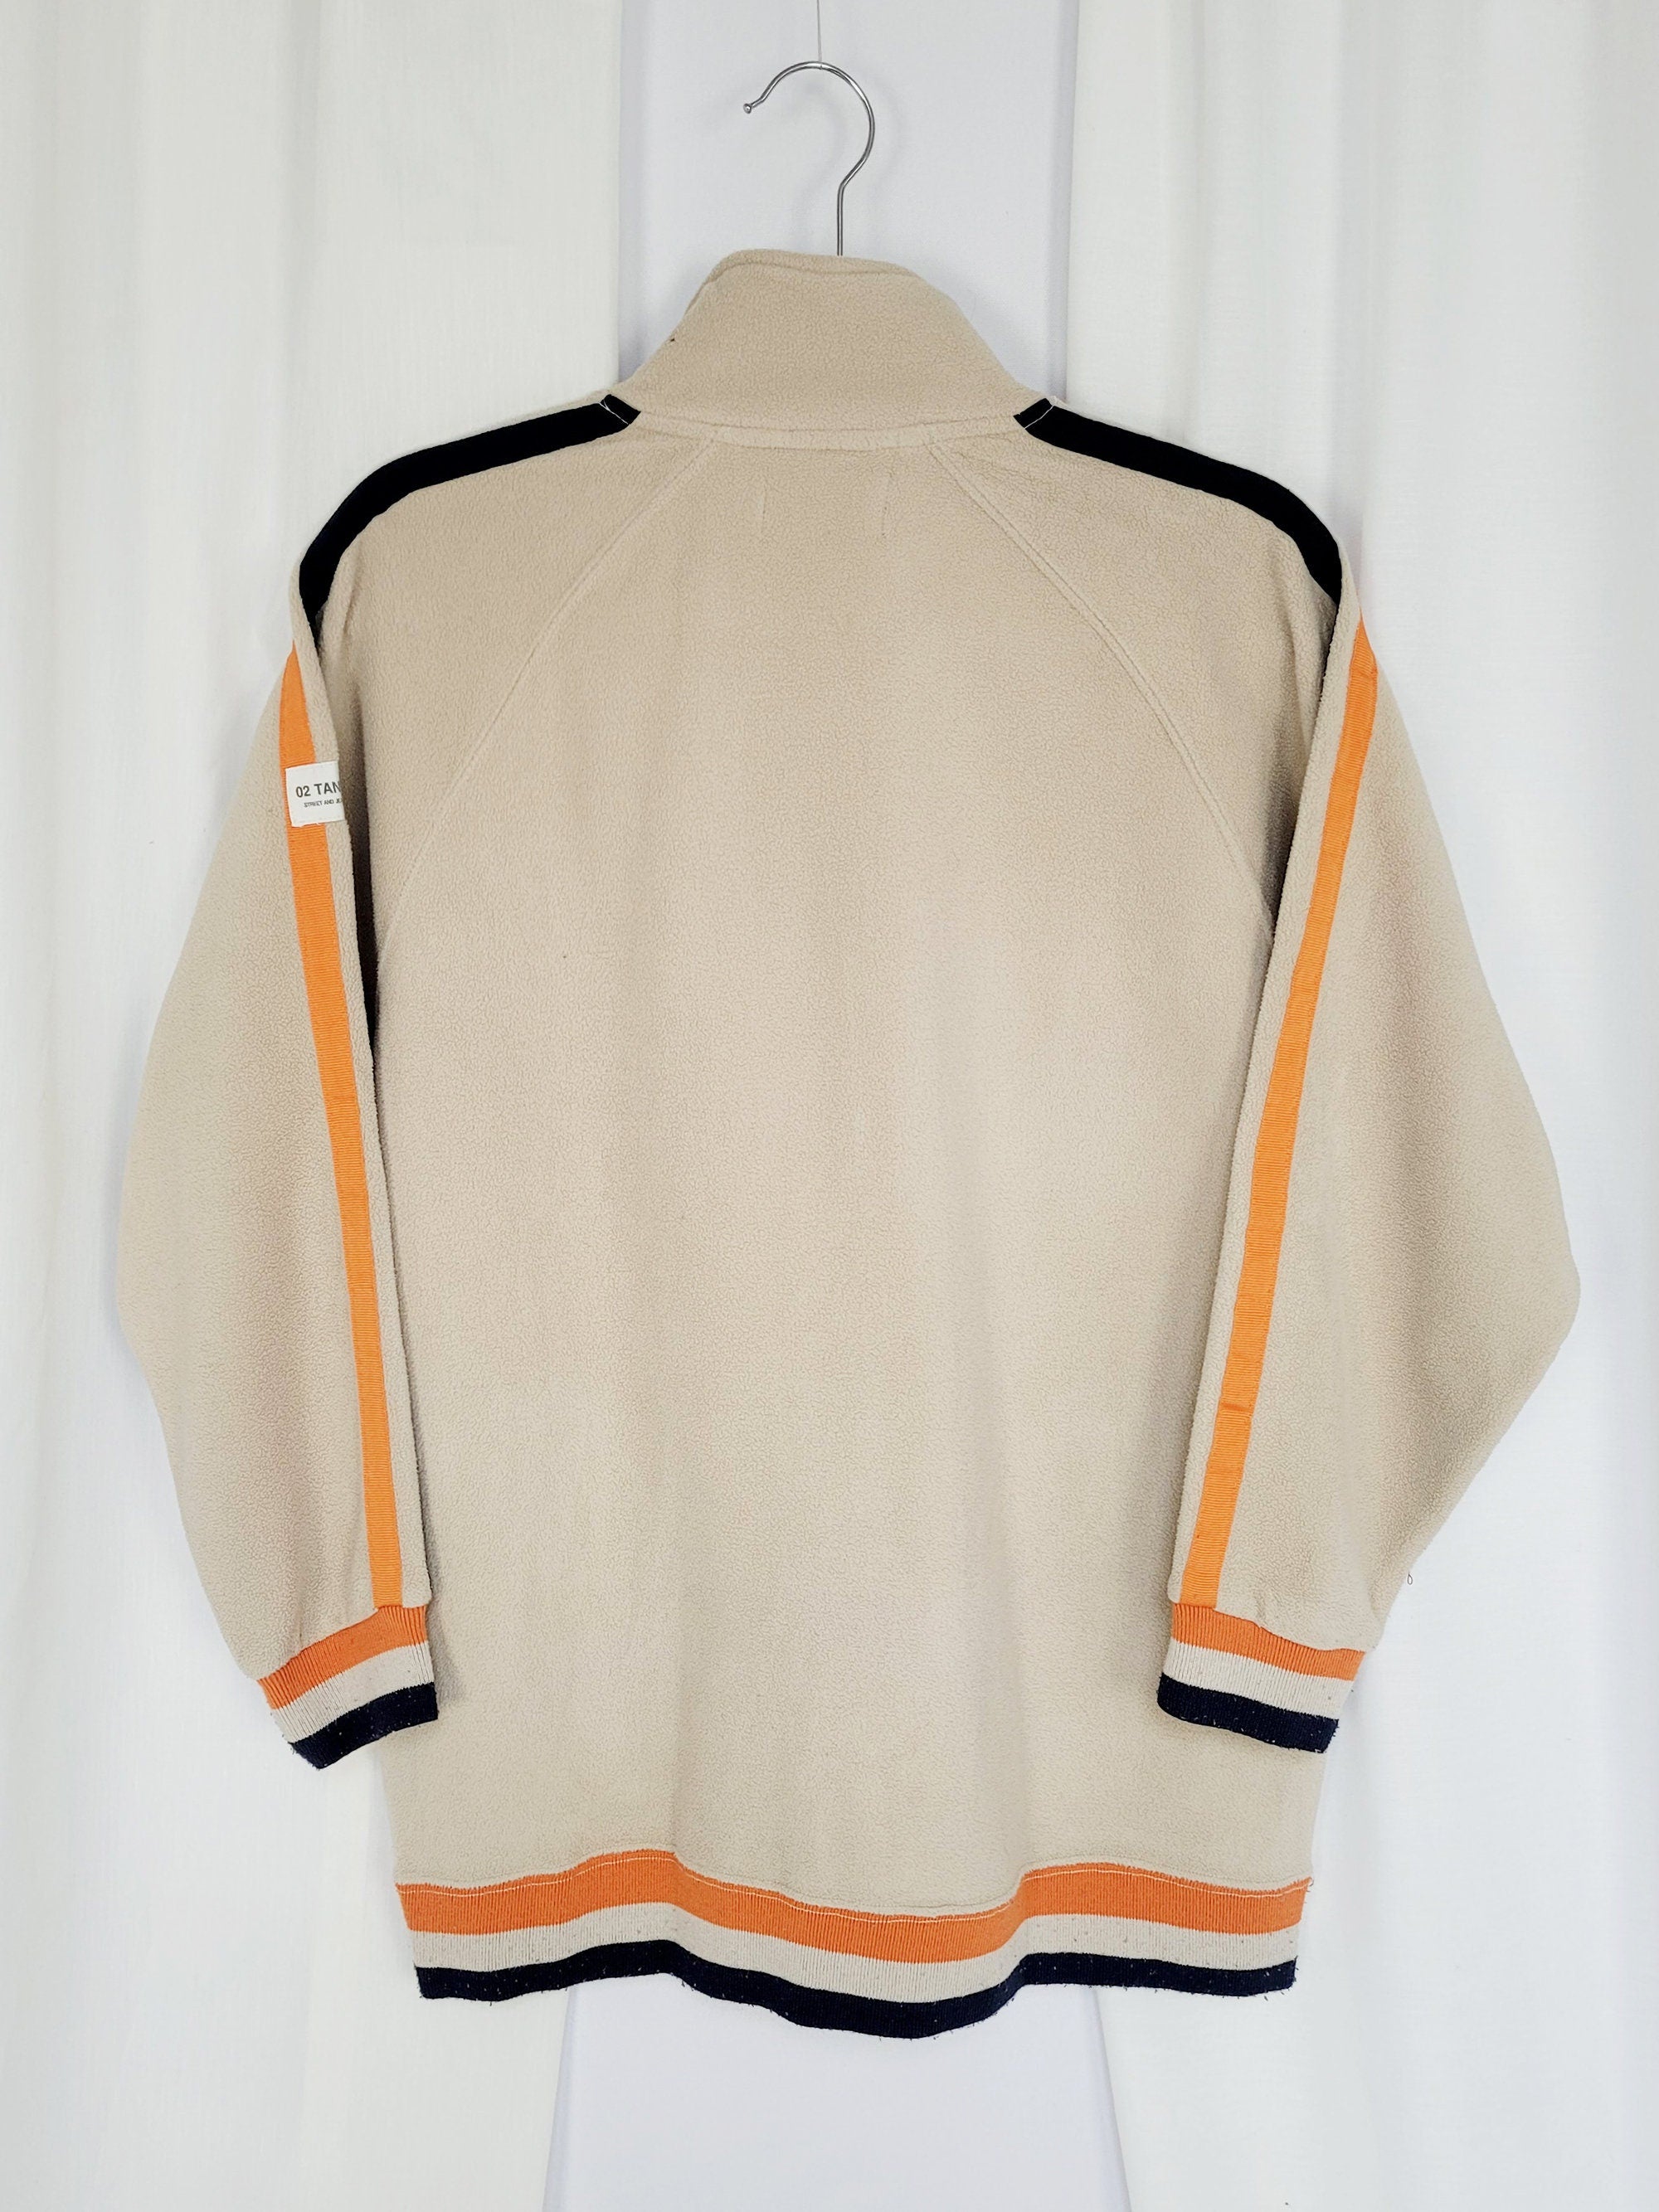 Vintage 90s beige fleece sports zip sweatshirt jacket